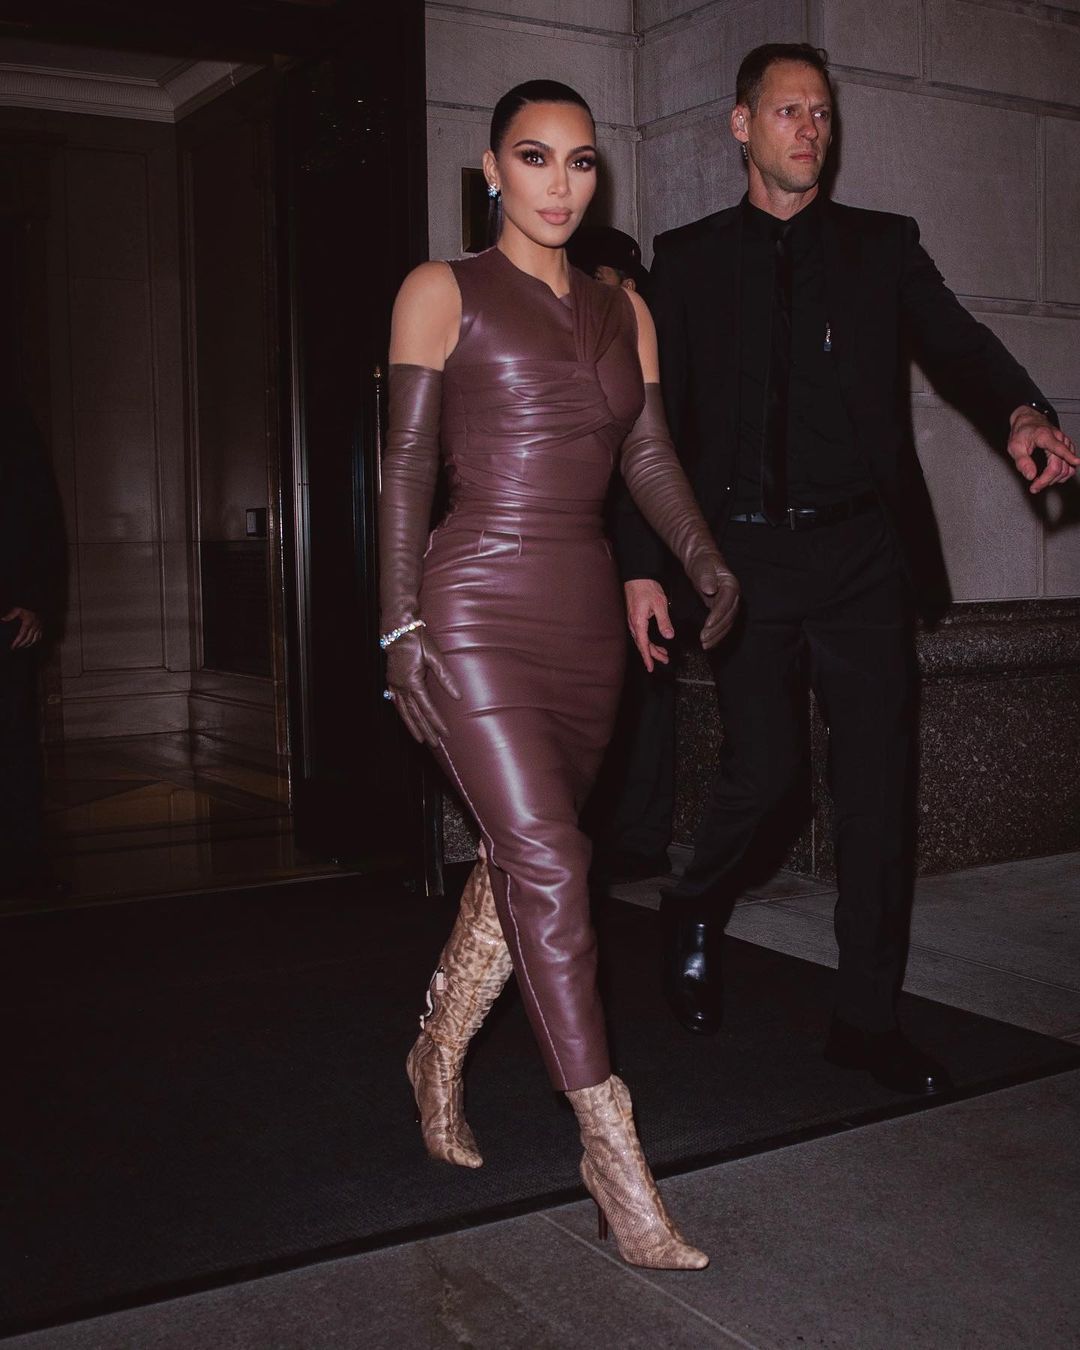 Menang Award, Kim Kardashian Pakai Dress Ketat yang Seksi!